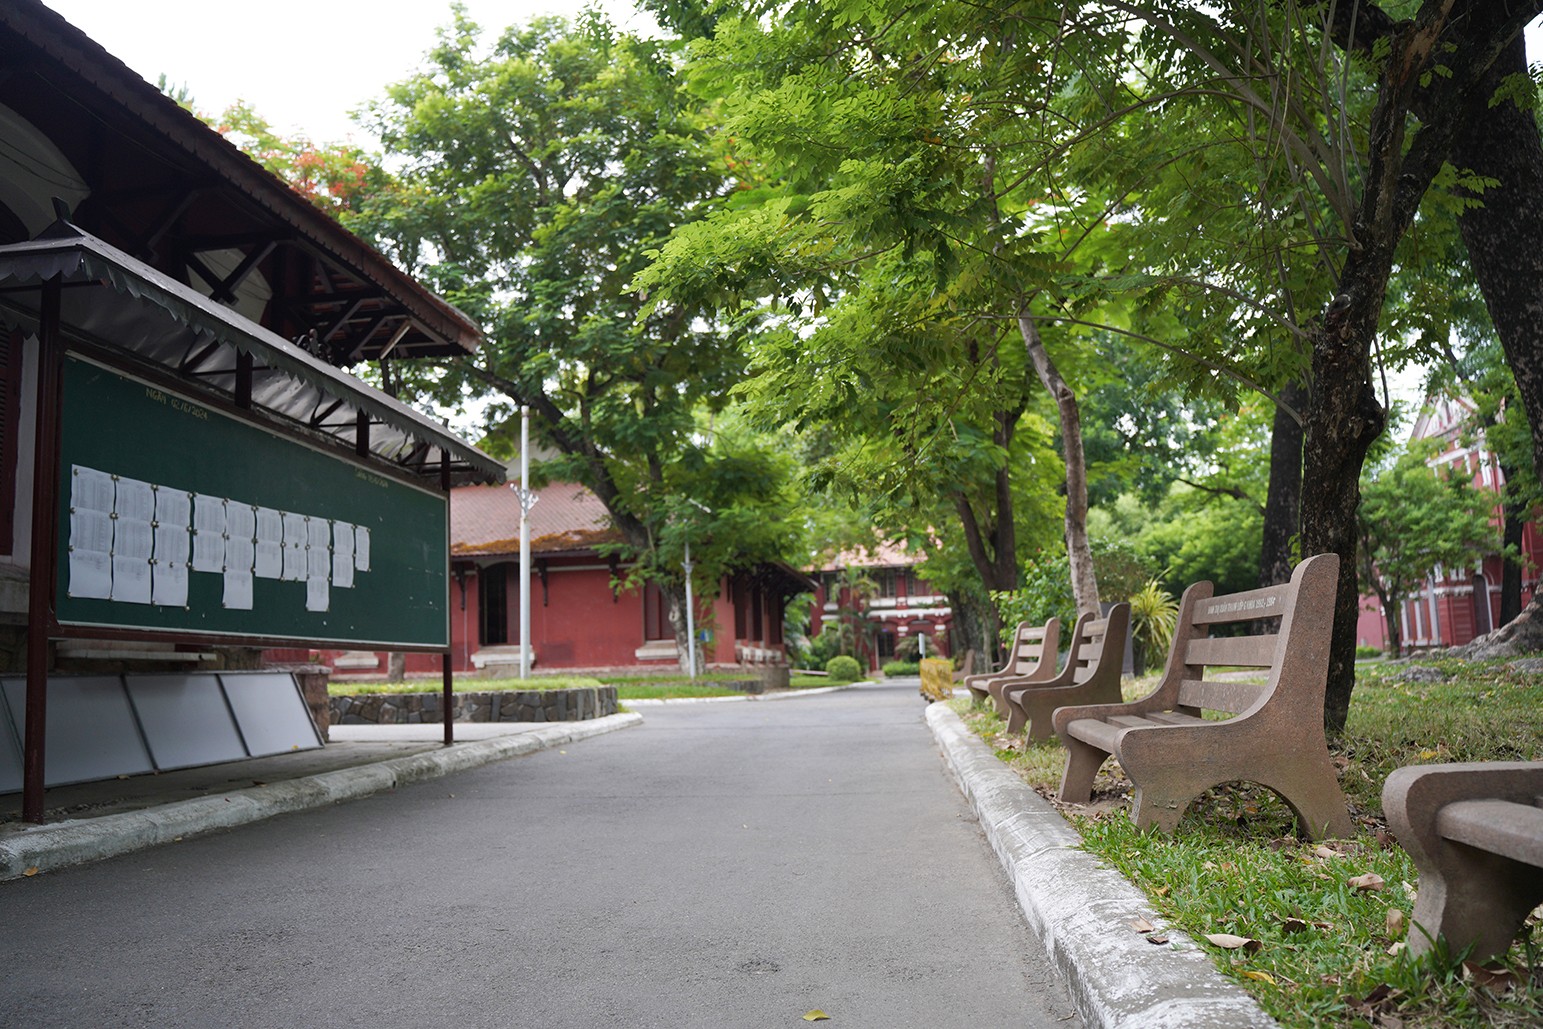 Trường Quốc học là trường cấp ba danh tiếng ở xứ Huế